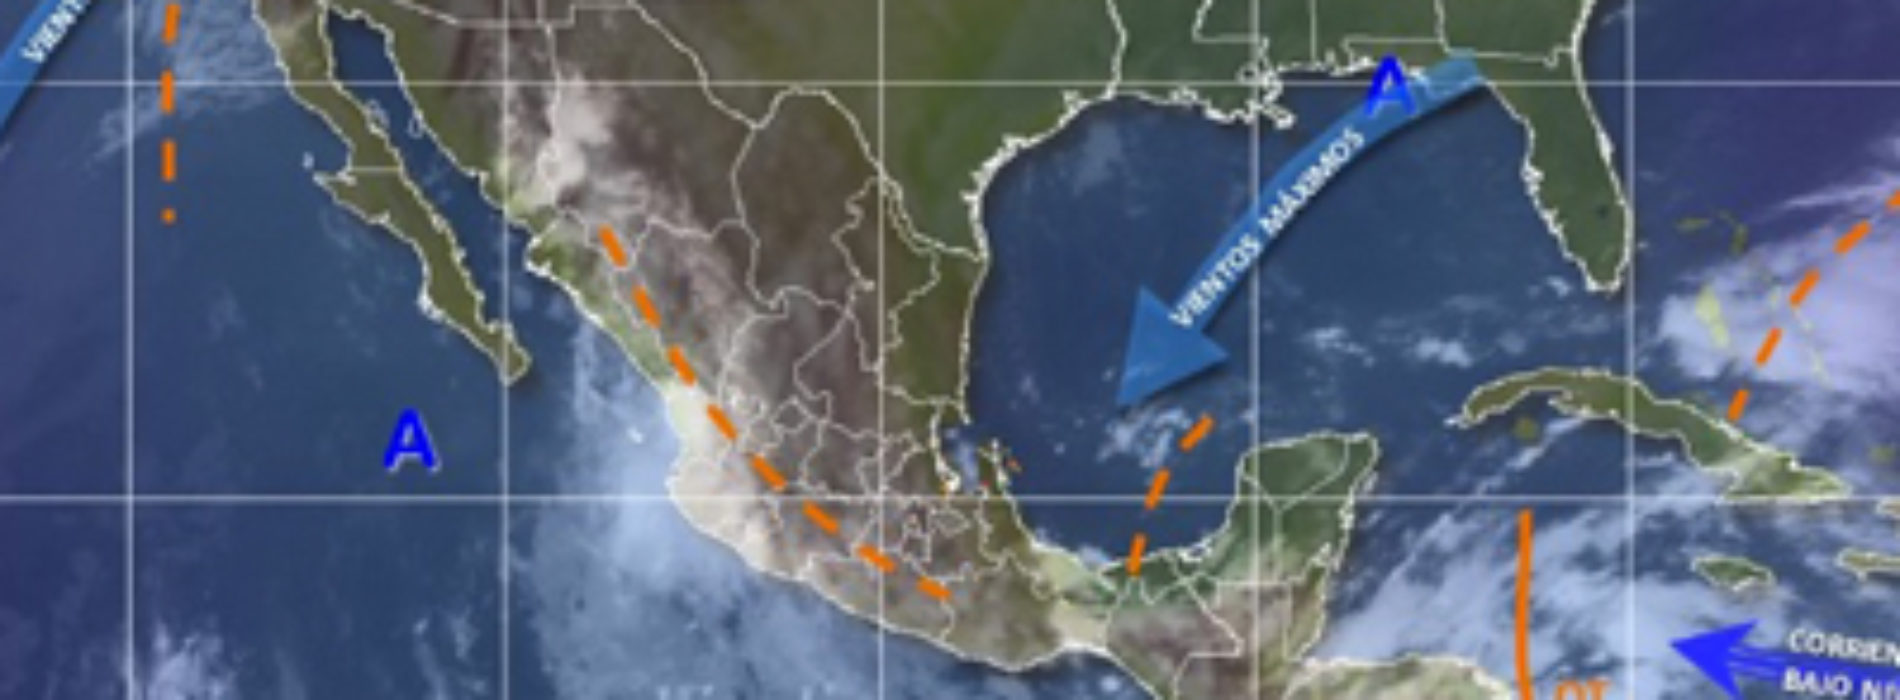 Prevén tormentas puntuales fuertes en Oaxaca  y evento de “Mar de Fondo” en el litoral oaxaqueño